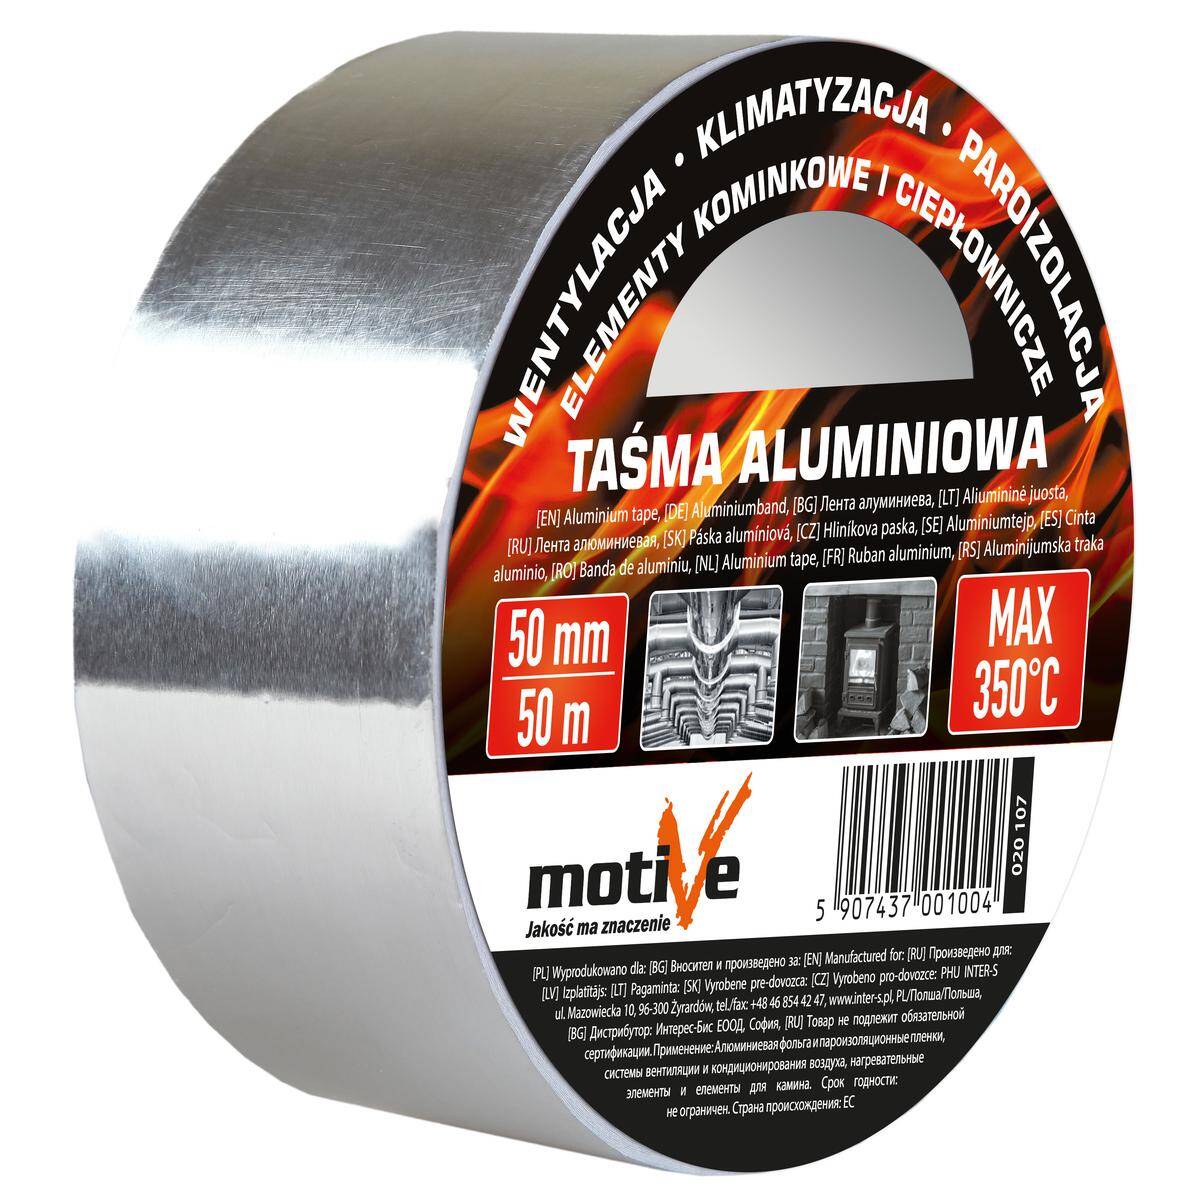 Taśma aluminiowa 50 mm/25 m HT 350° MOTIVE 020 104